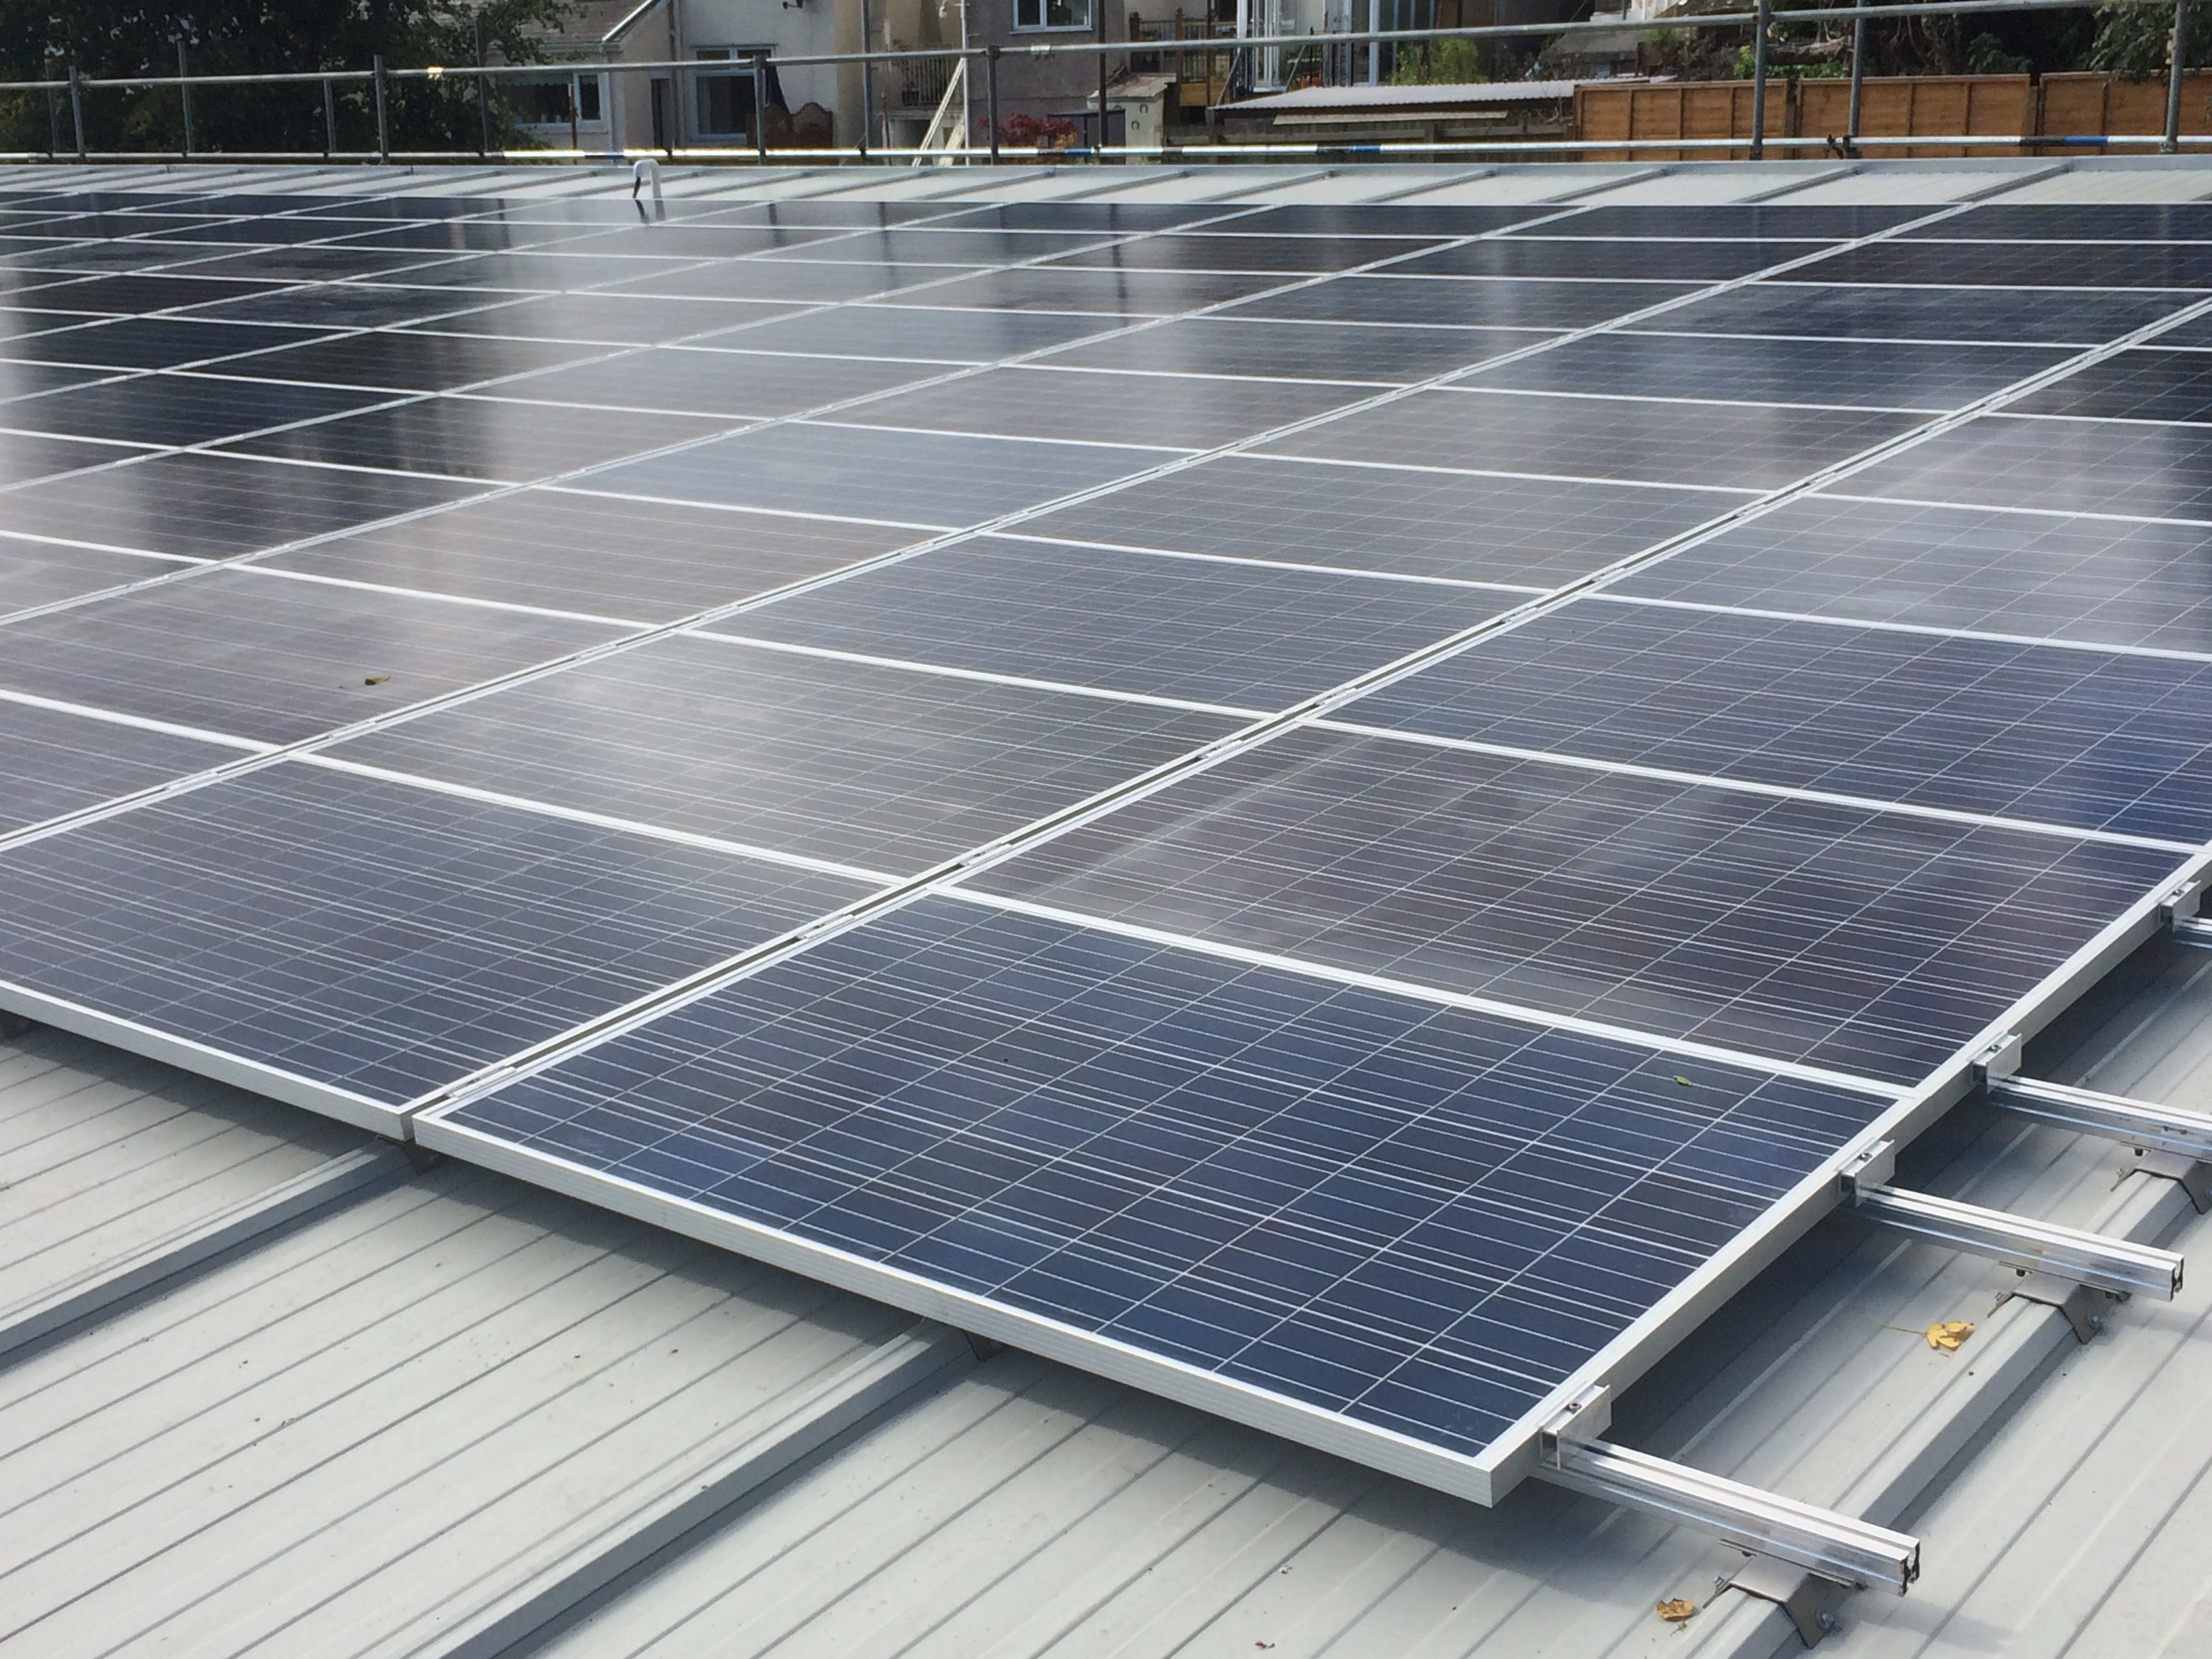 Brynhyfryd Solar PV, Solar PV Swansea, Solar PV Wales, Commercial solar panel installations, solar panel installers, pv solar installatiions